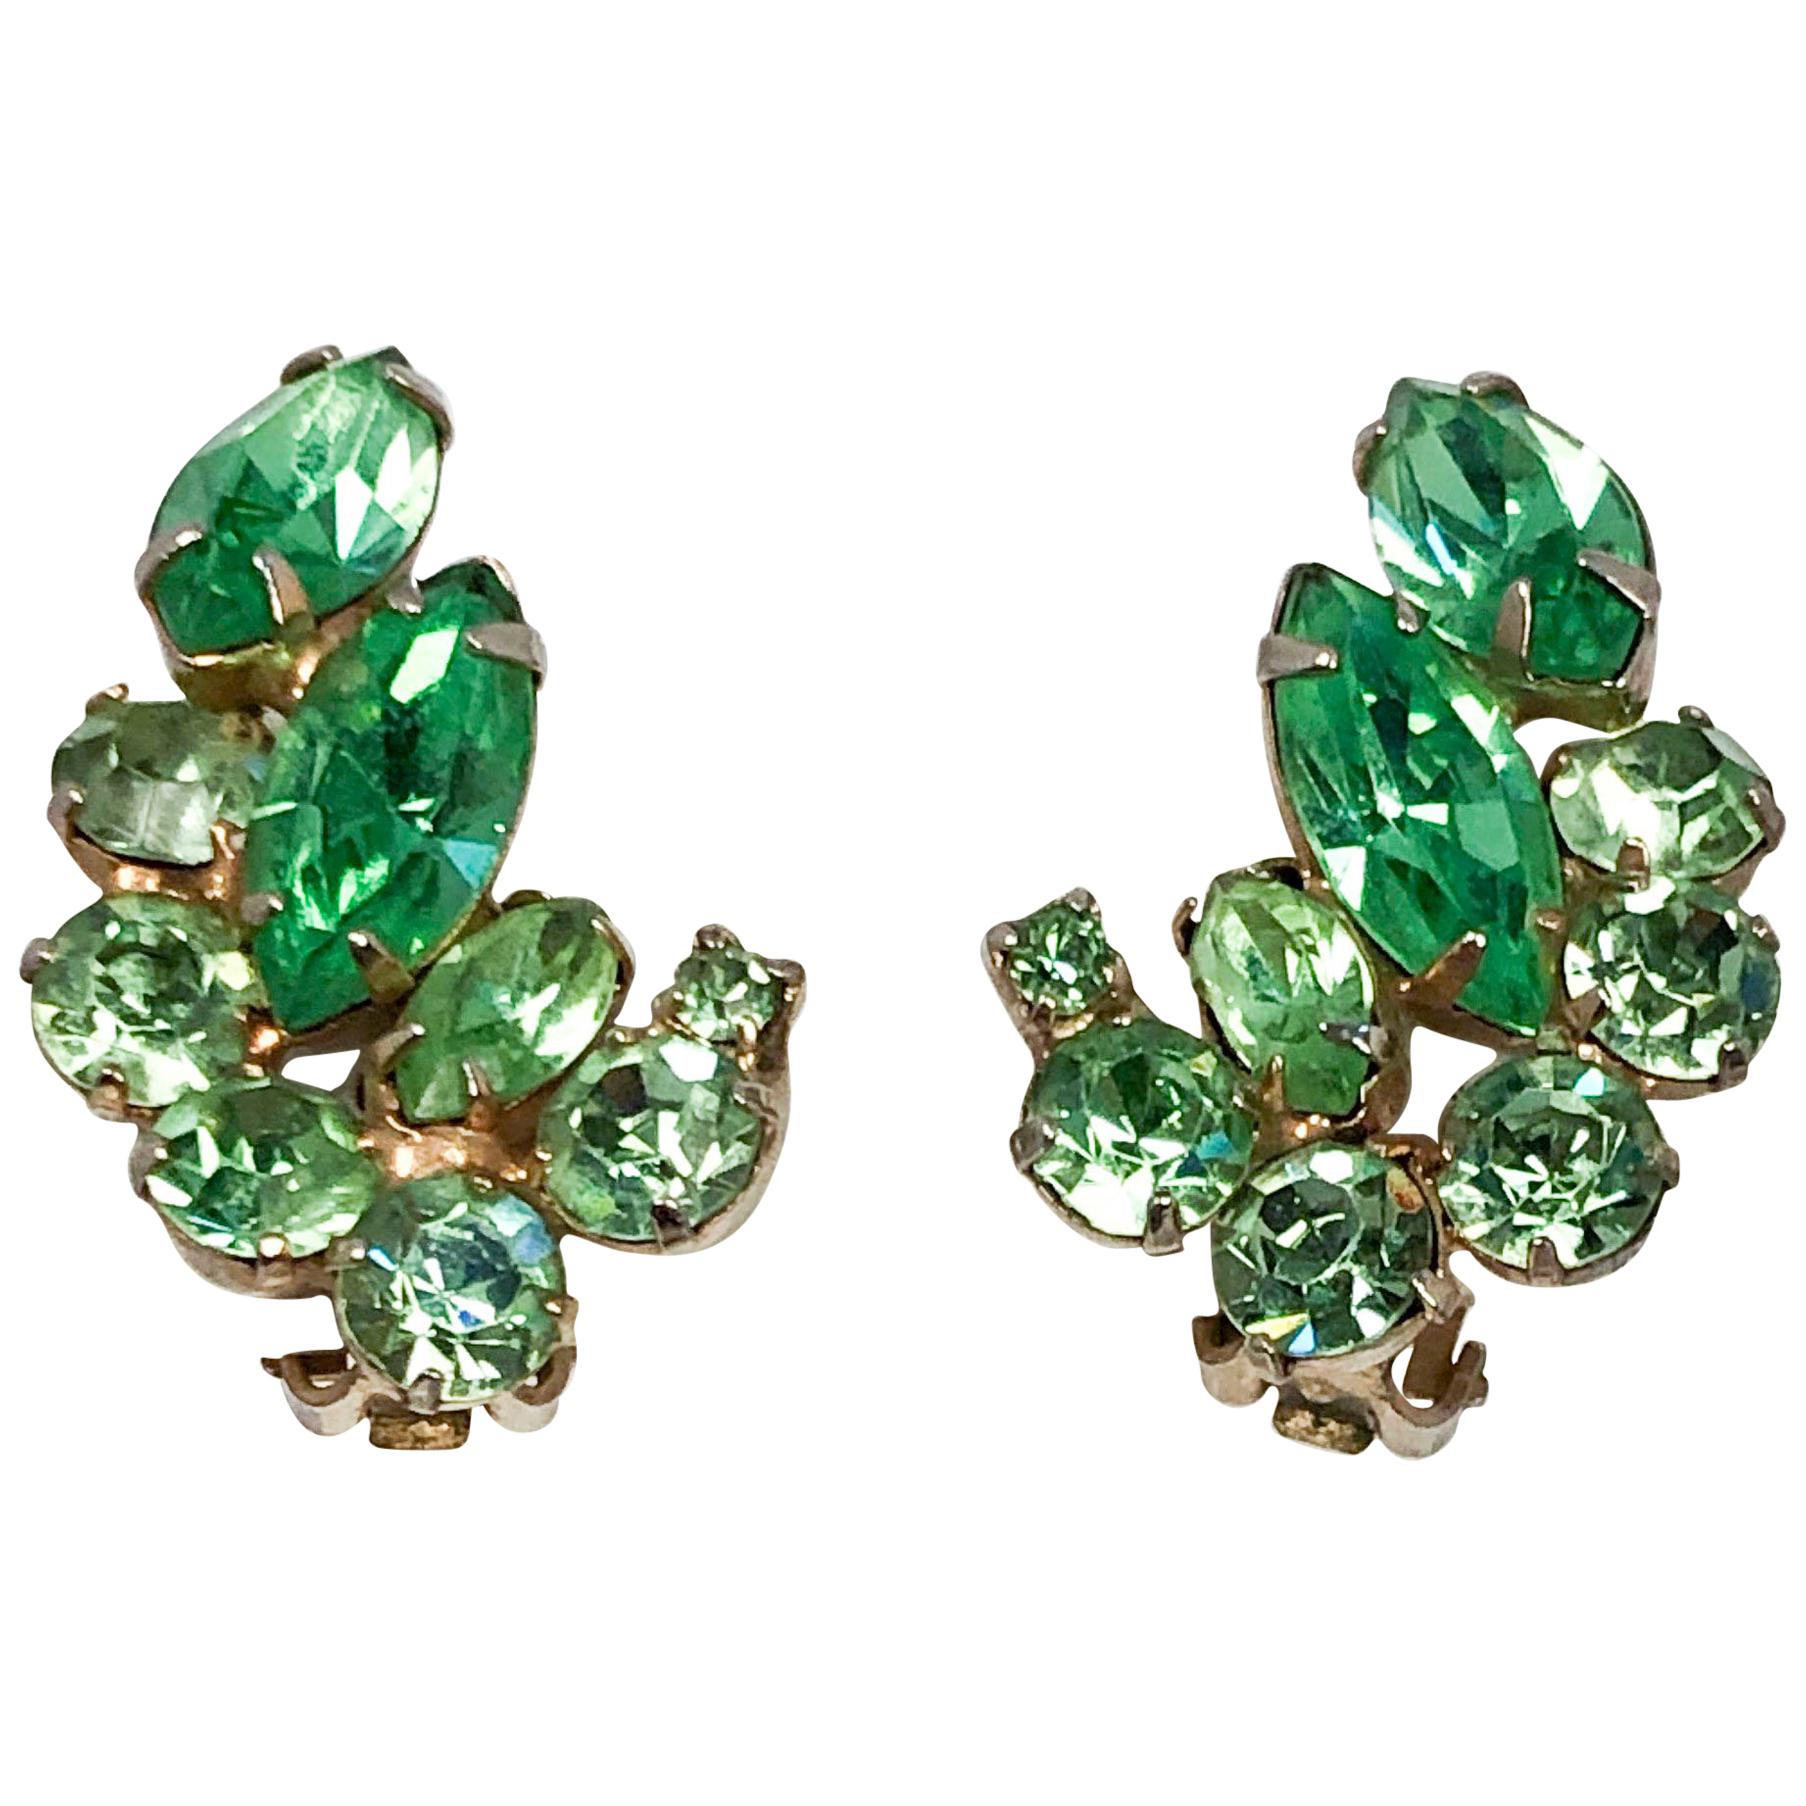 1950s Hattie Carnegie Clip-on Earrings in Multi-shades of Green